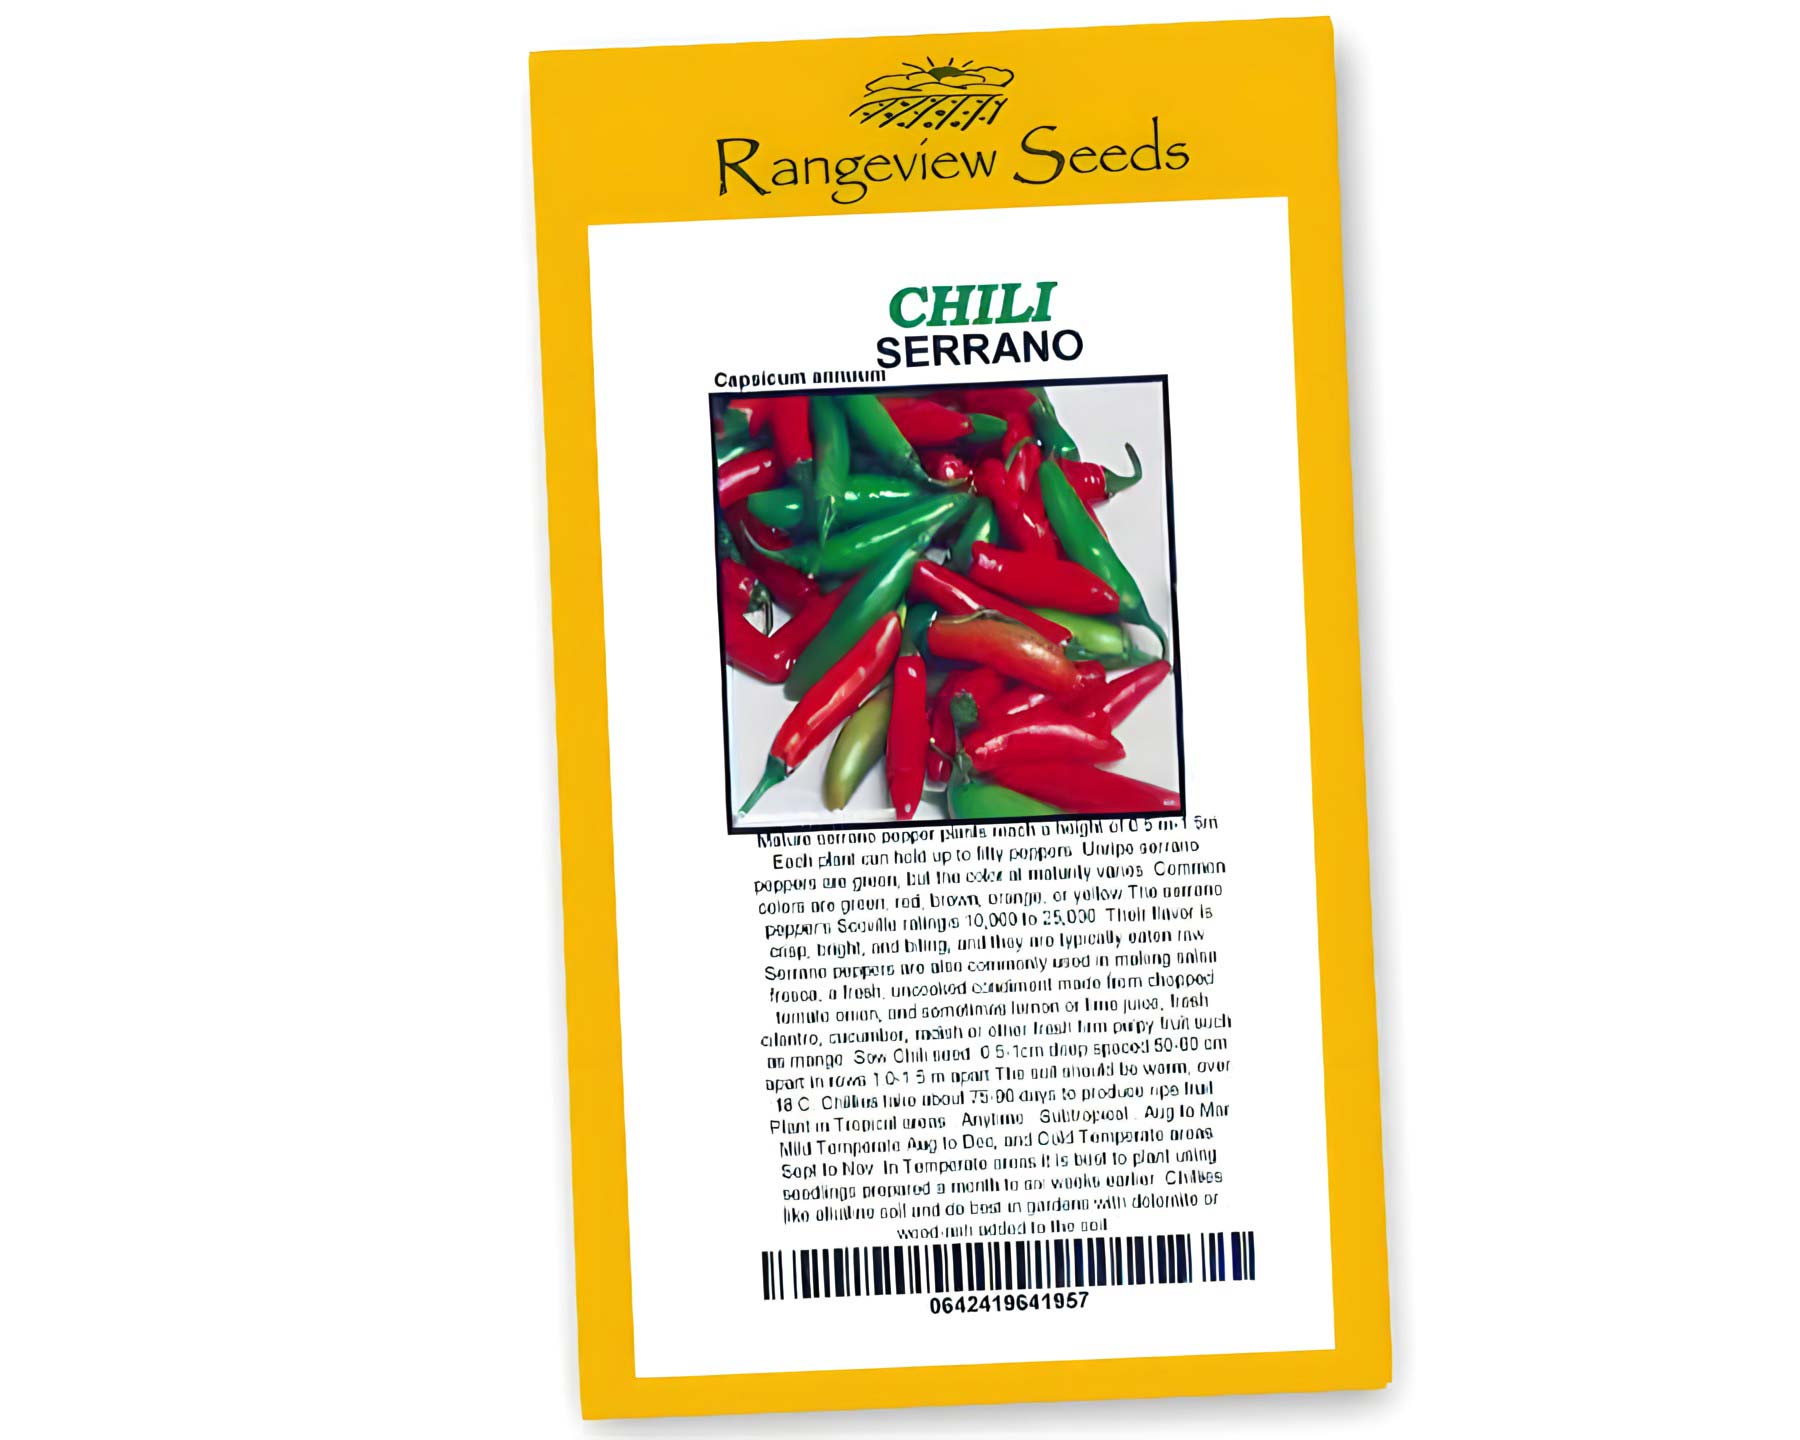 Chili Serrano - Rangeview Seeds